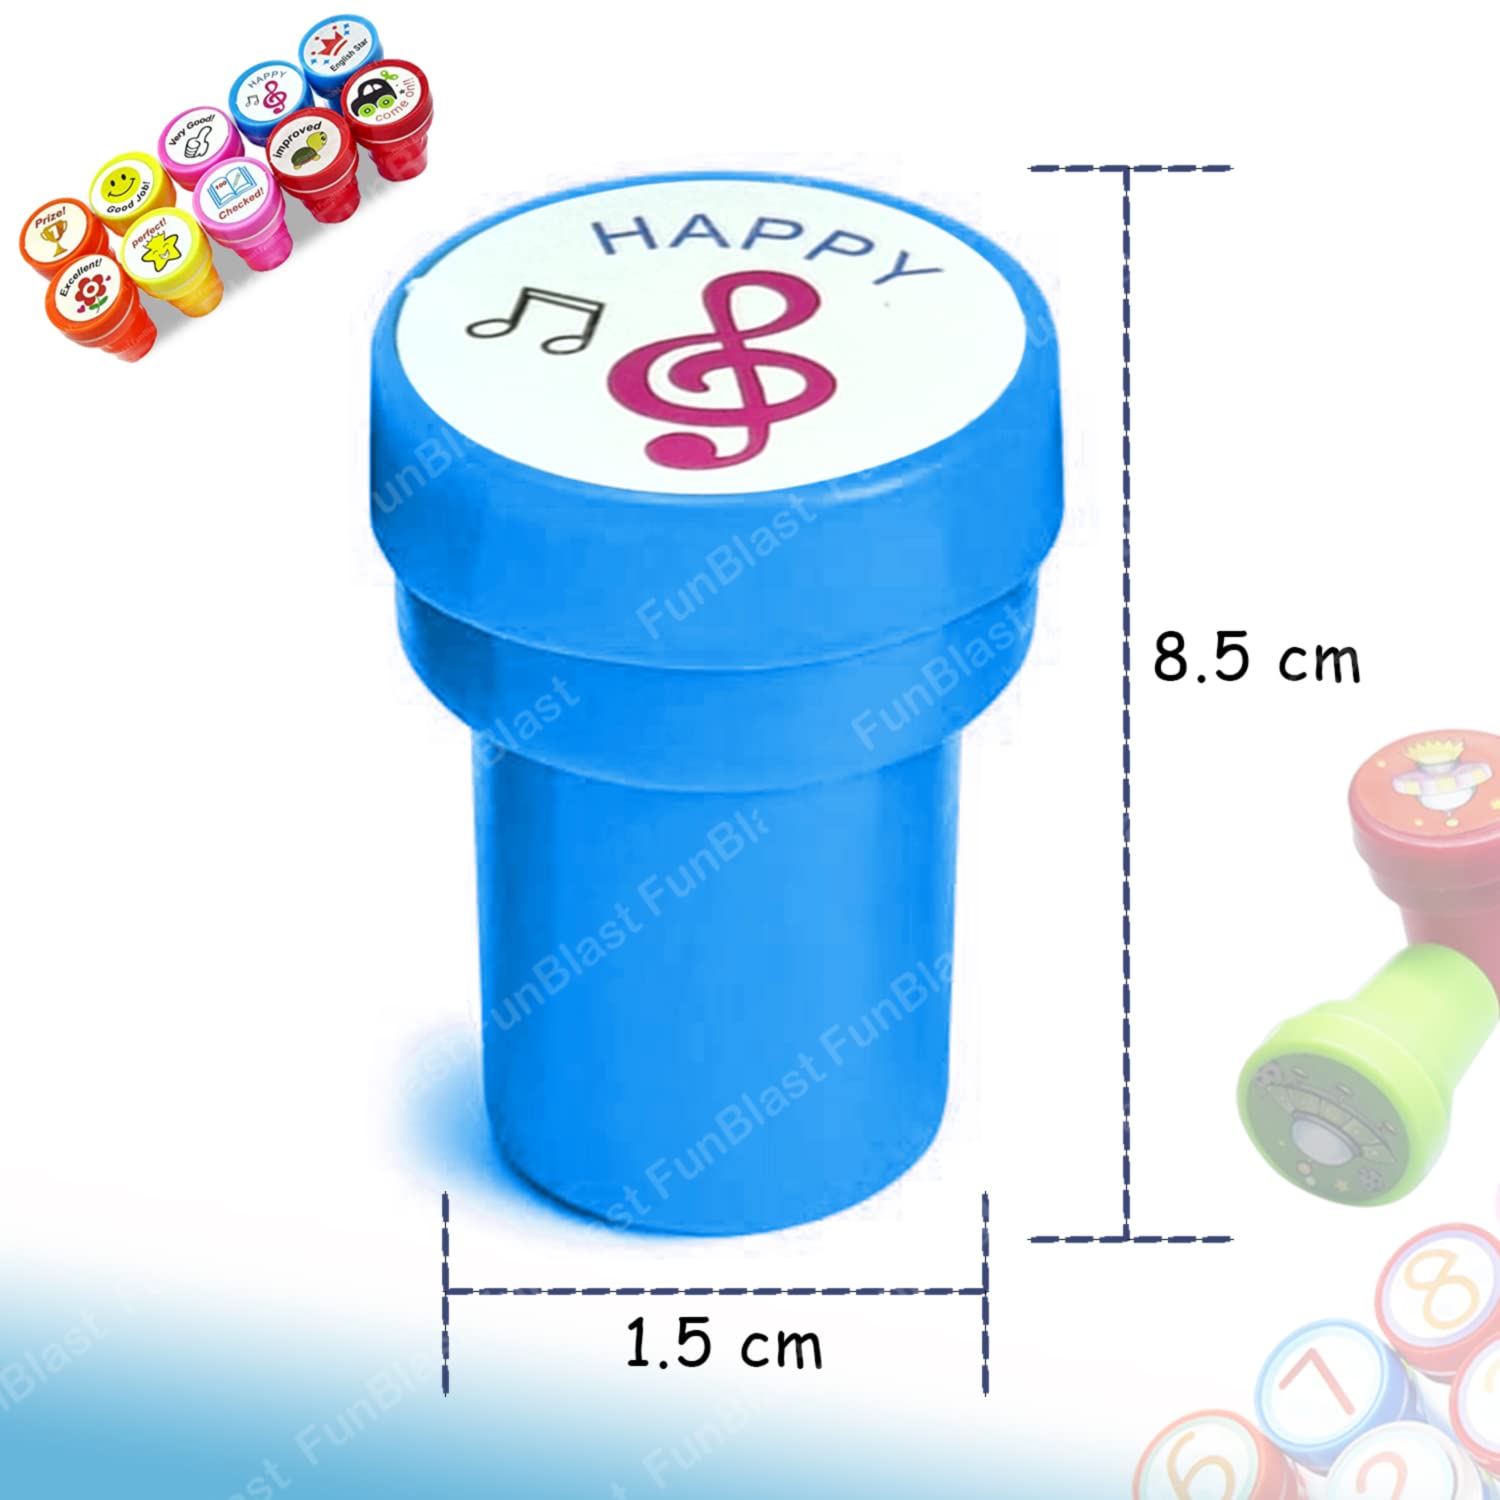 10 Pcs Motivation Stamper for Kids – Plastic Stamper Toys Art & Craft for School Supplies Toys for Kids, Boys & Girls